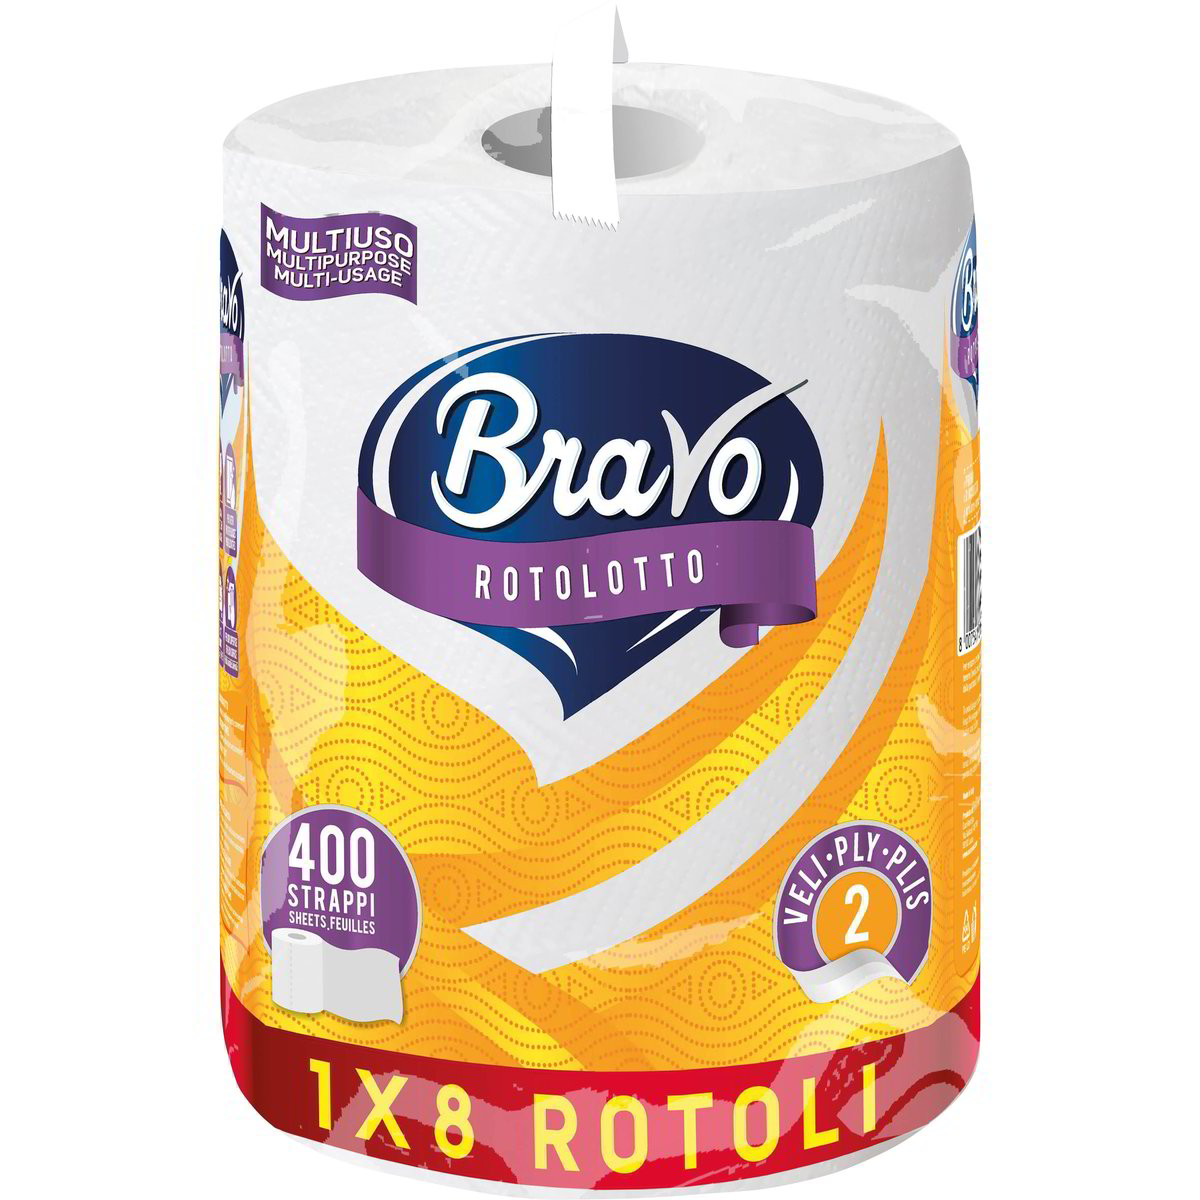 Bravo Carta Igienica 2 Veli 10 pz